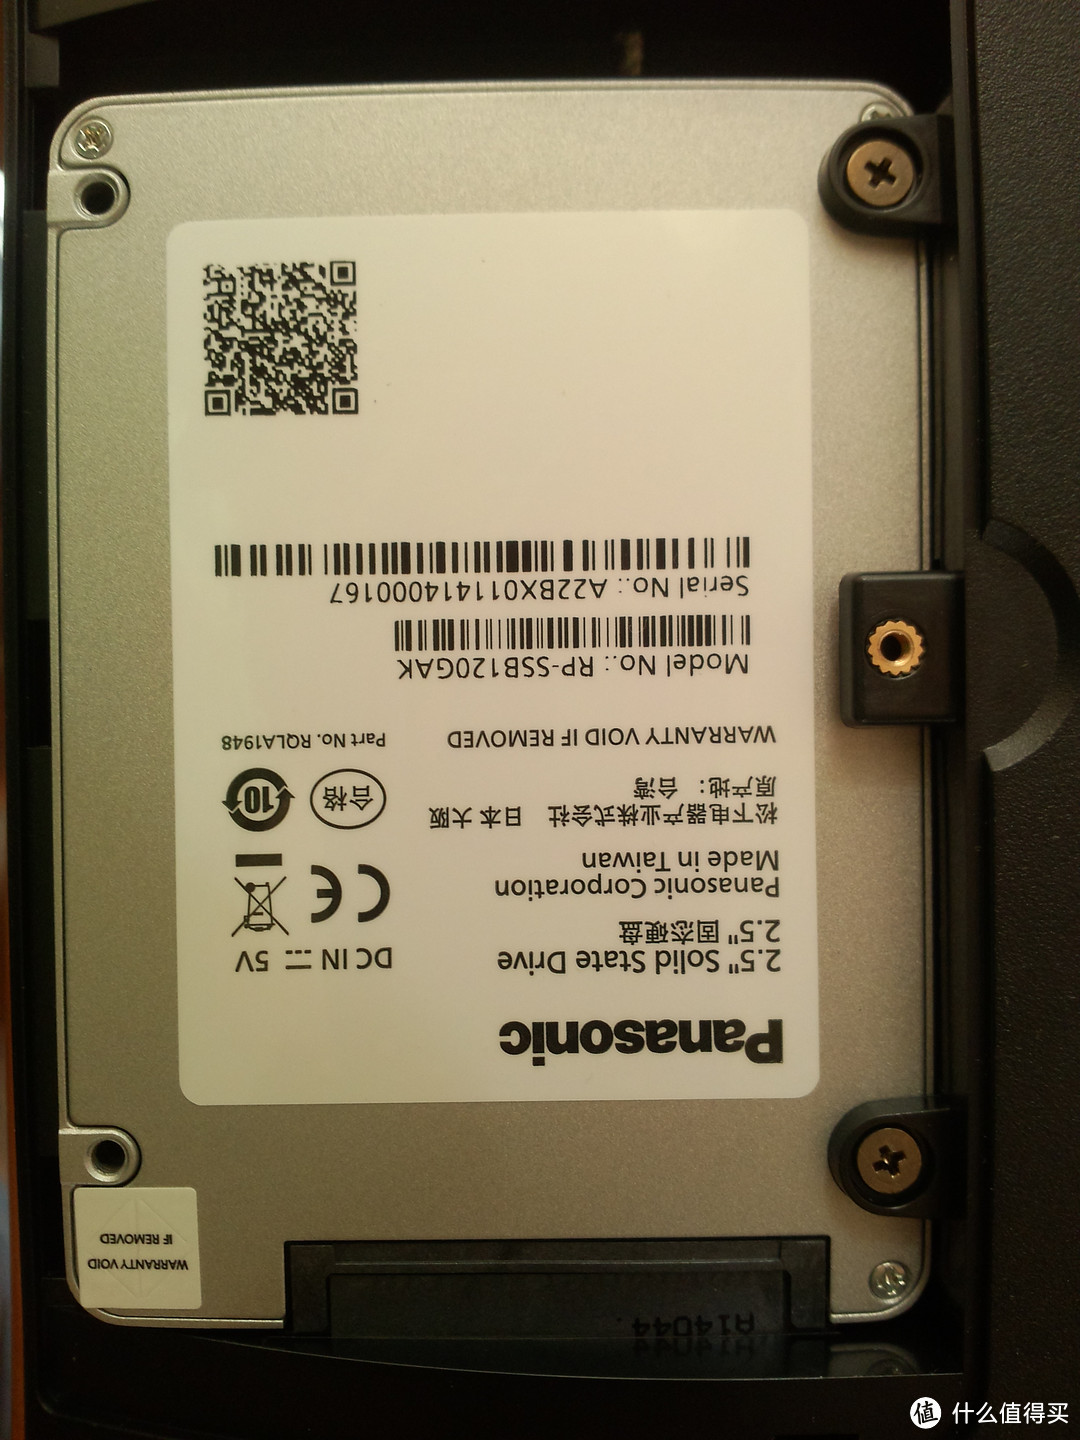 谈谈跟风入手 Panasonic 松下 RP-SSB120GAK 120G SSD固态硬盘